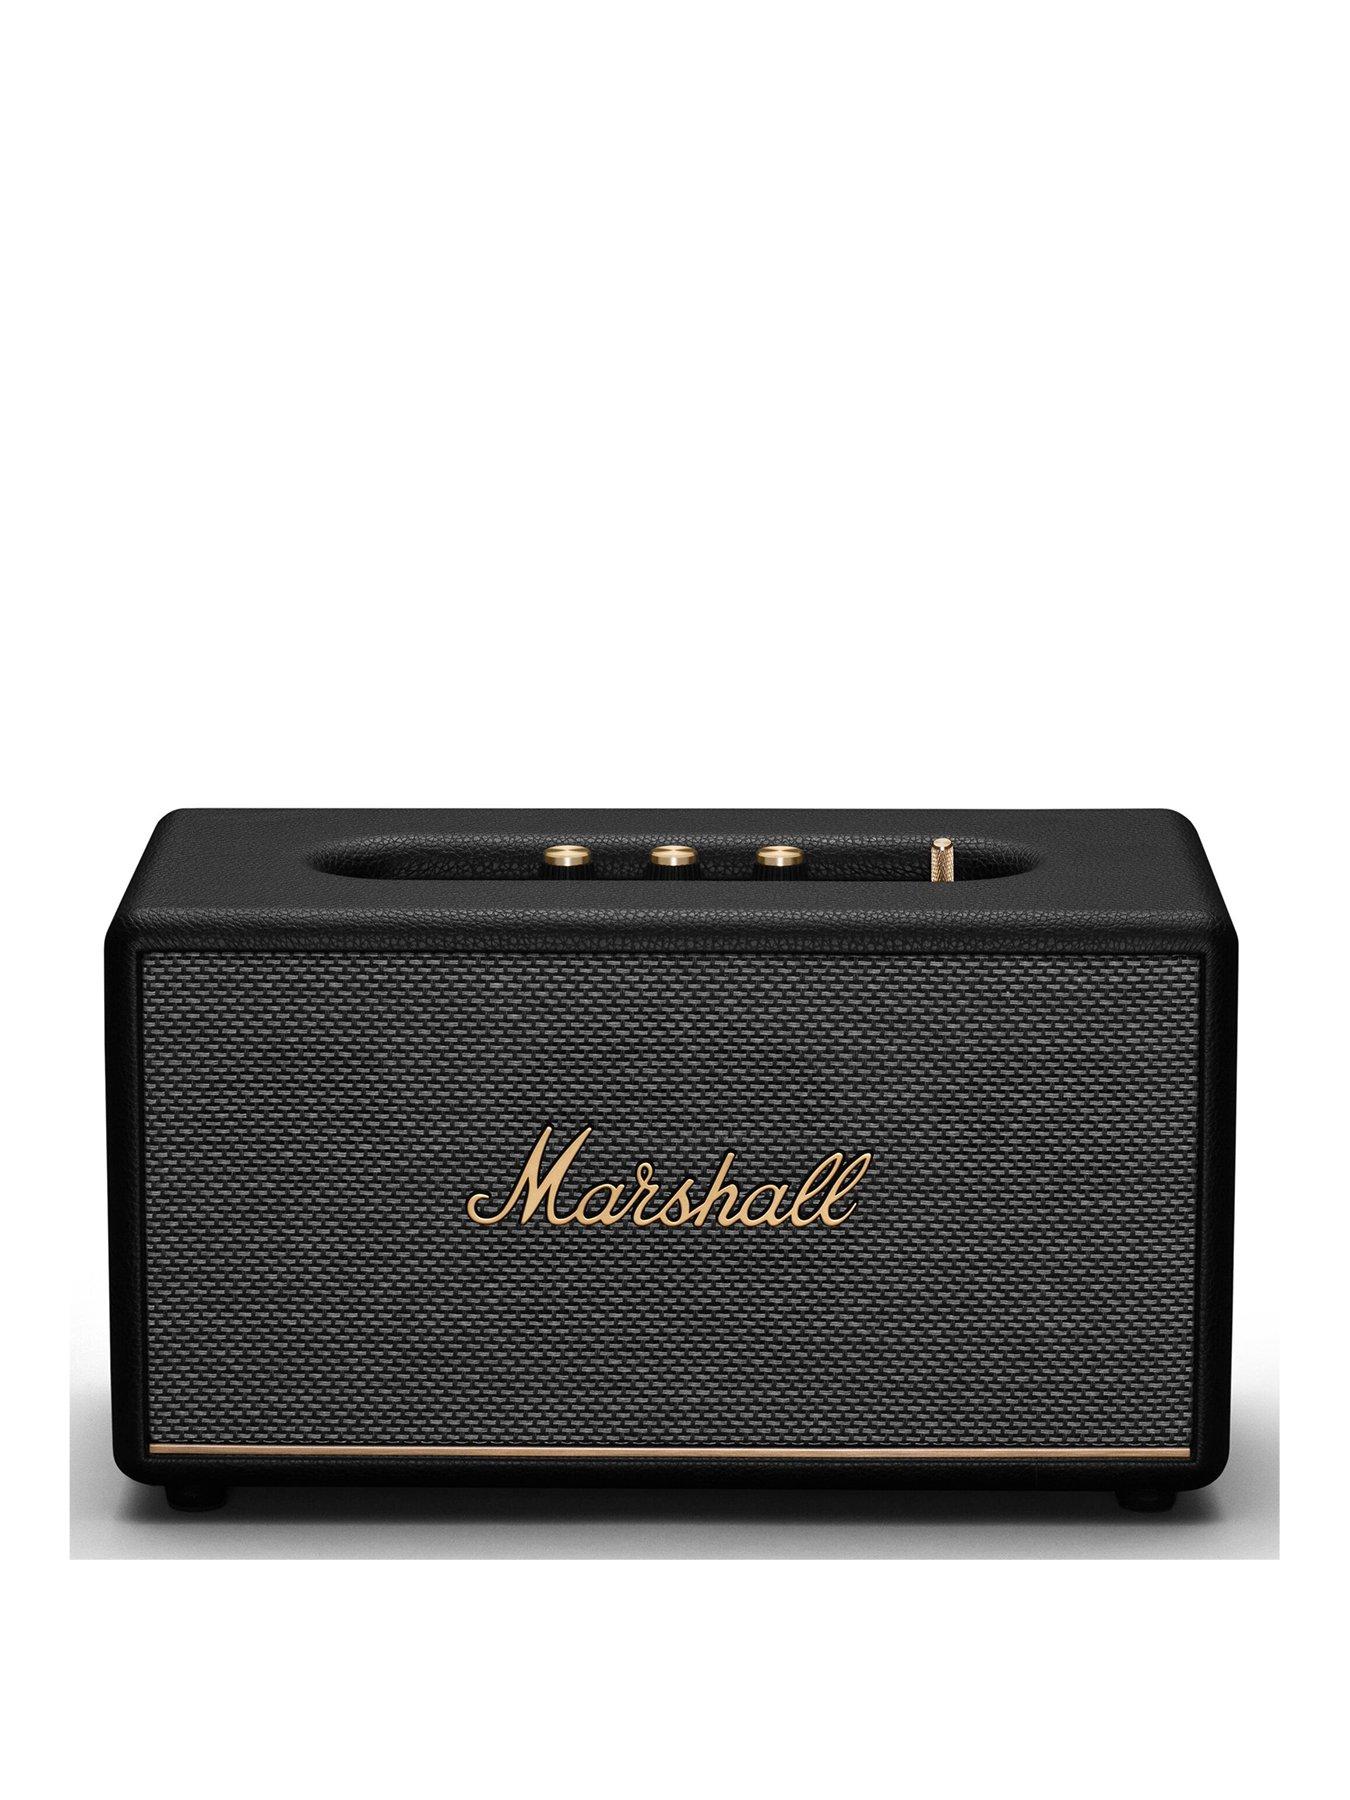 Marshall Stanmore III Bluetooth Speaker - Black